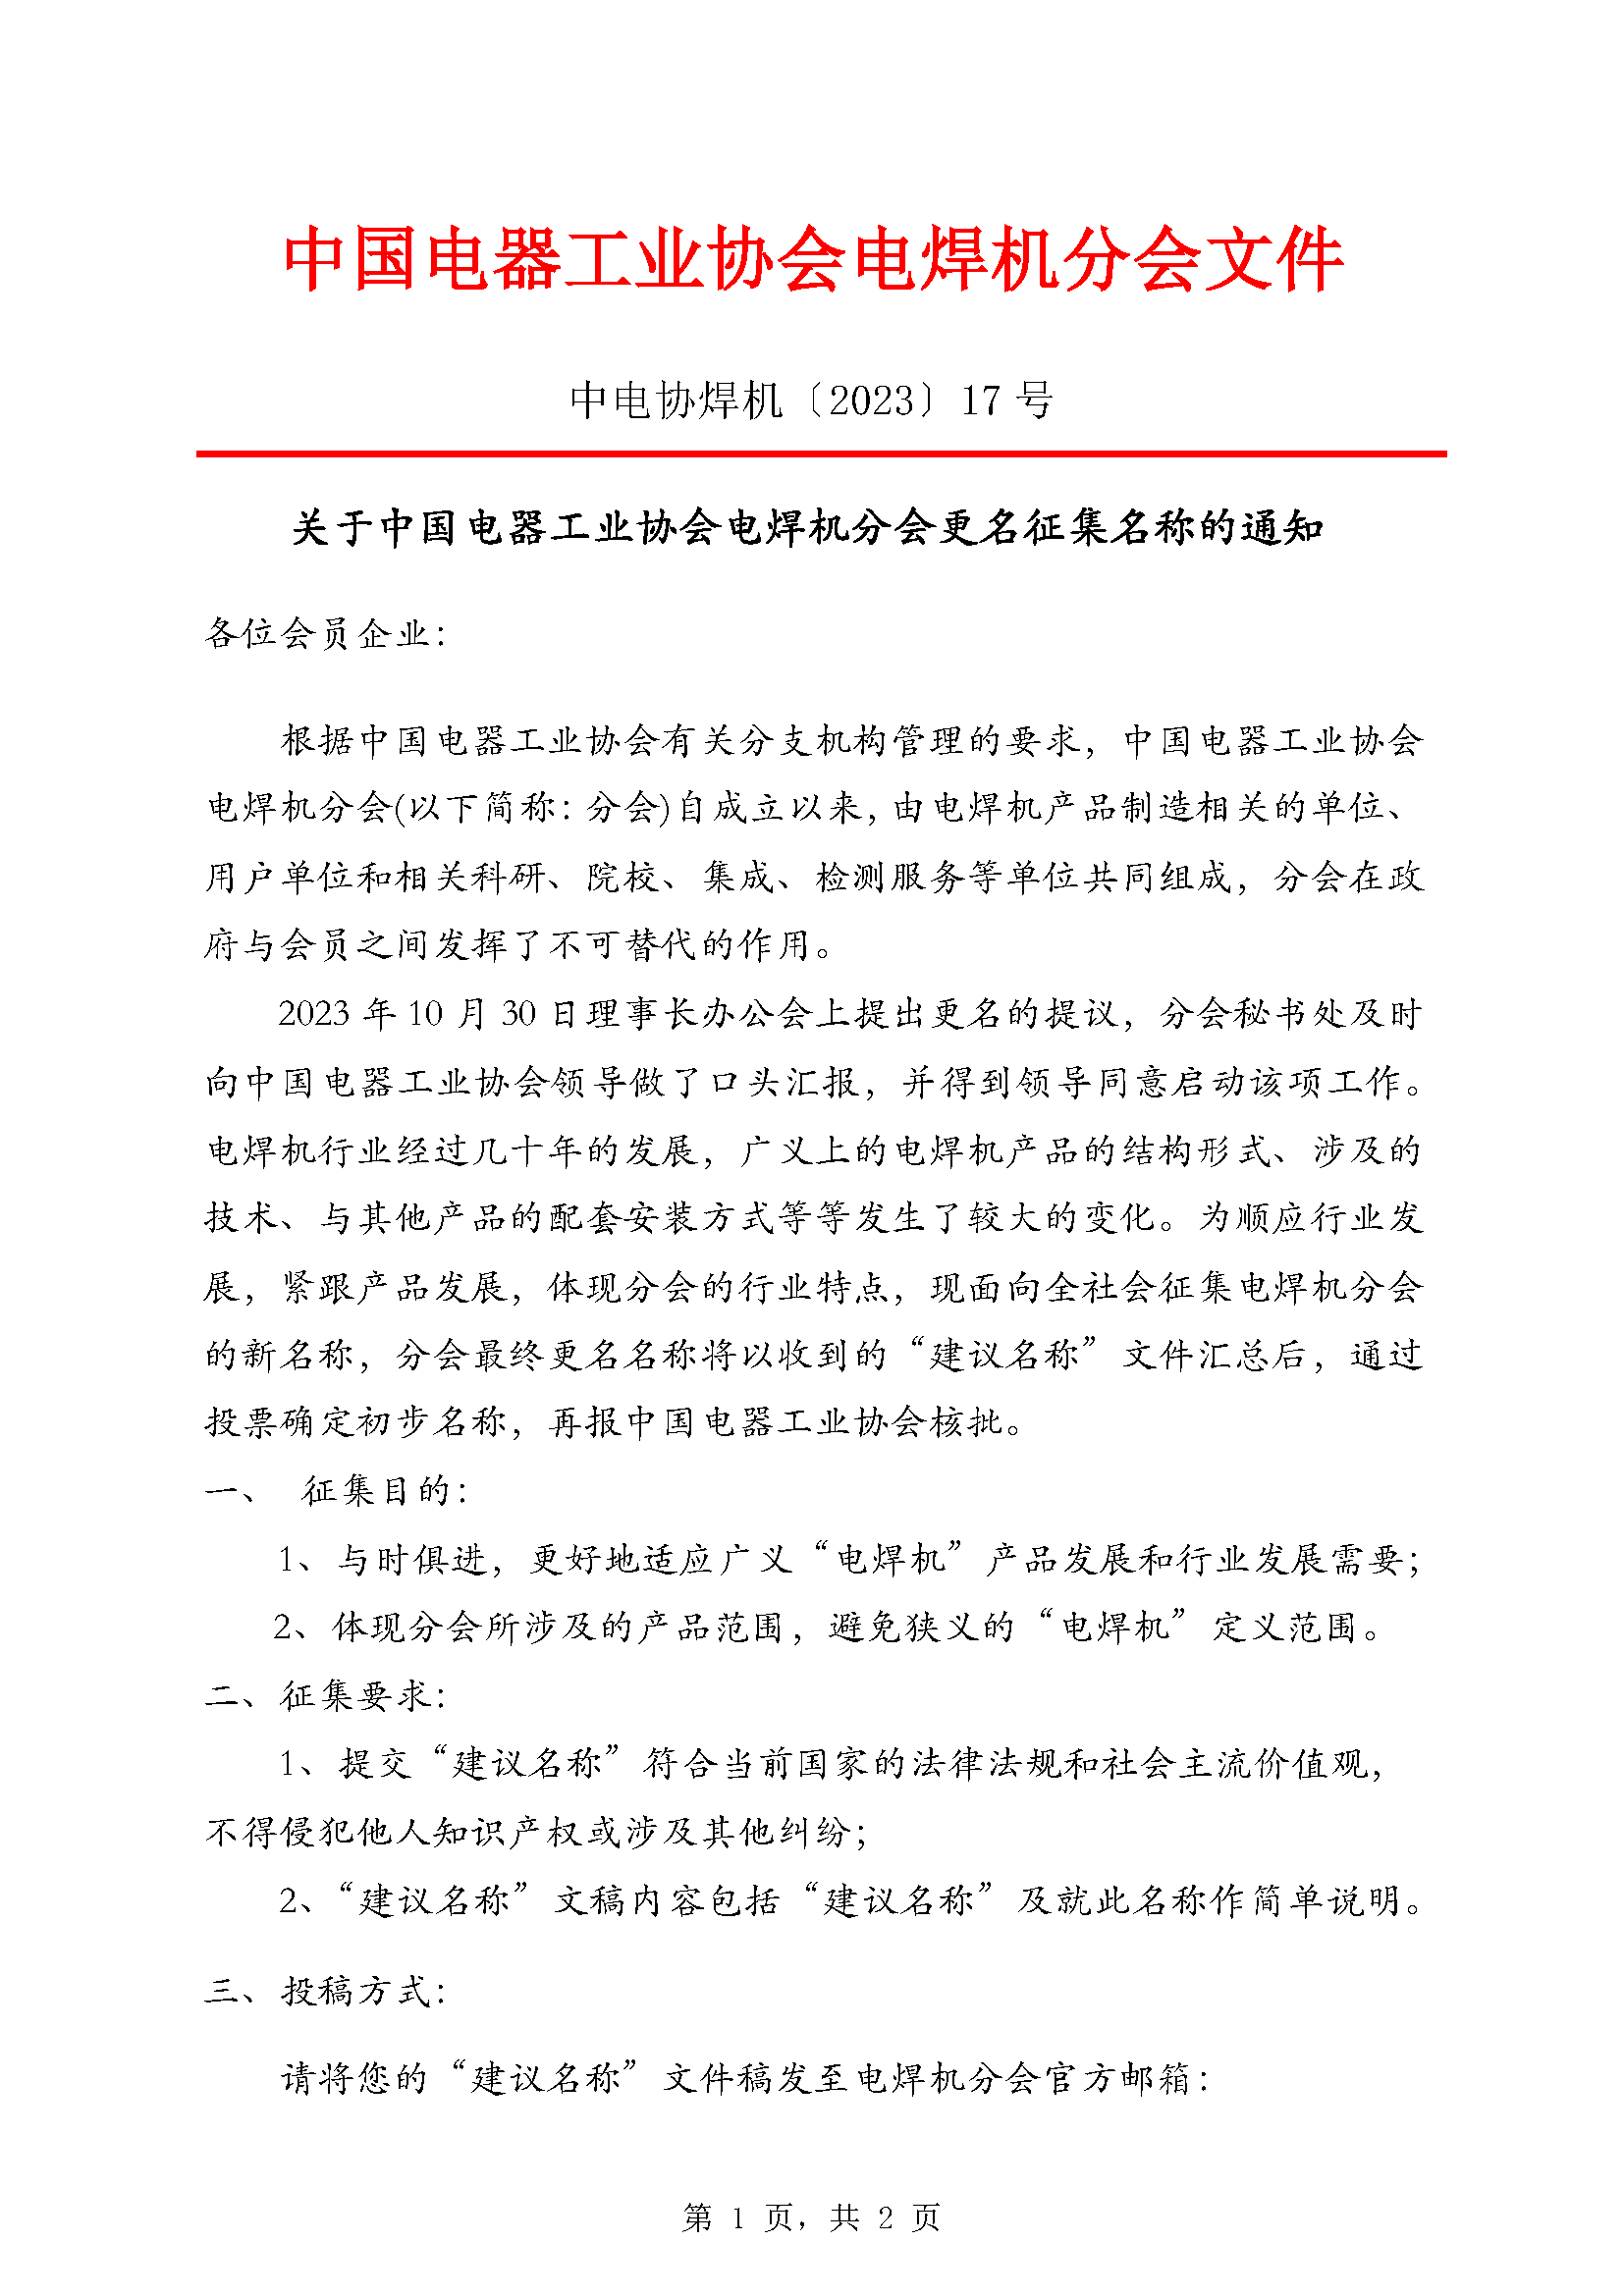 【2023}17号关于中国电器工业协会电焊机分会更名征集名称的通知